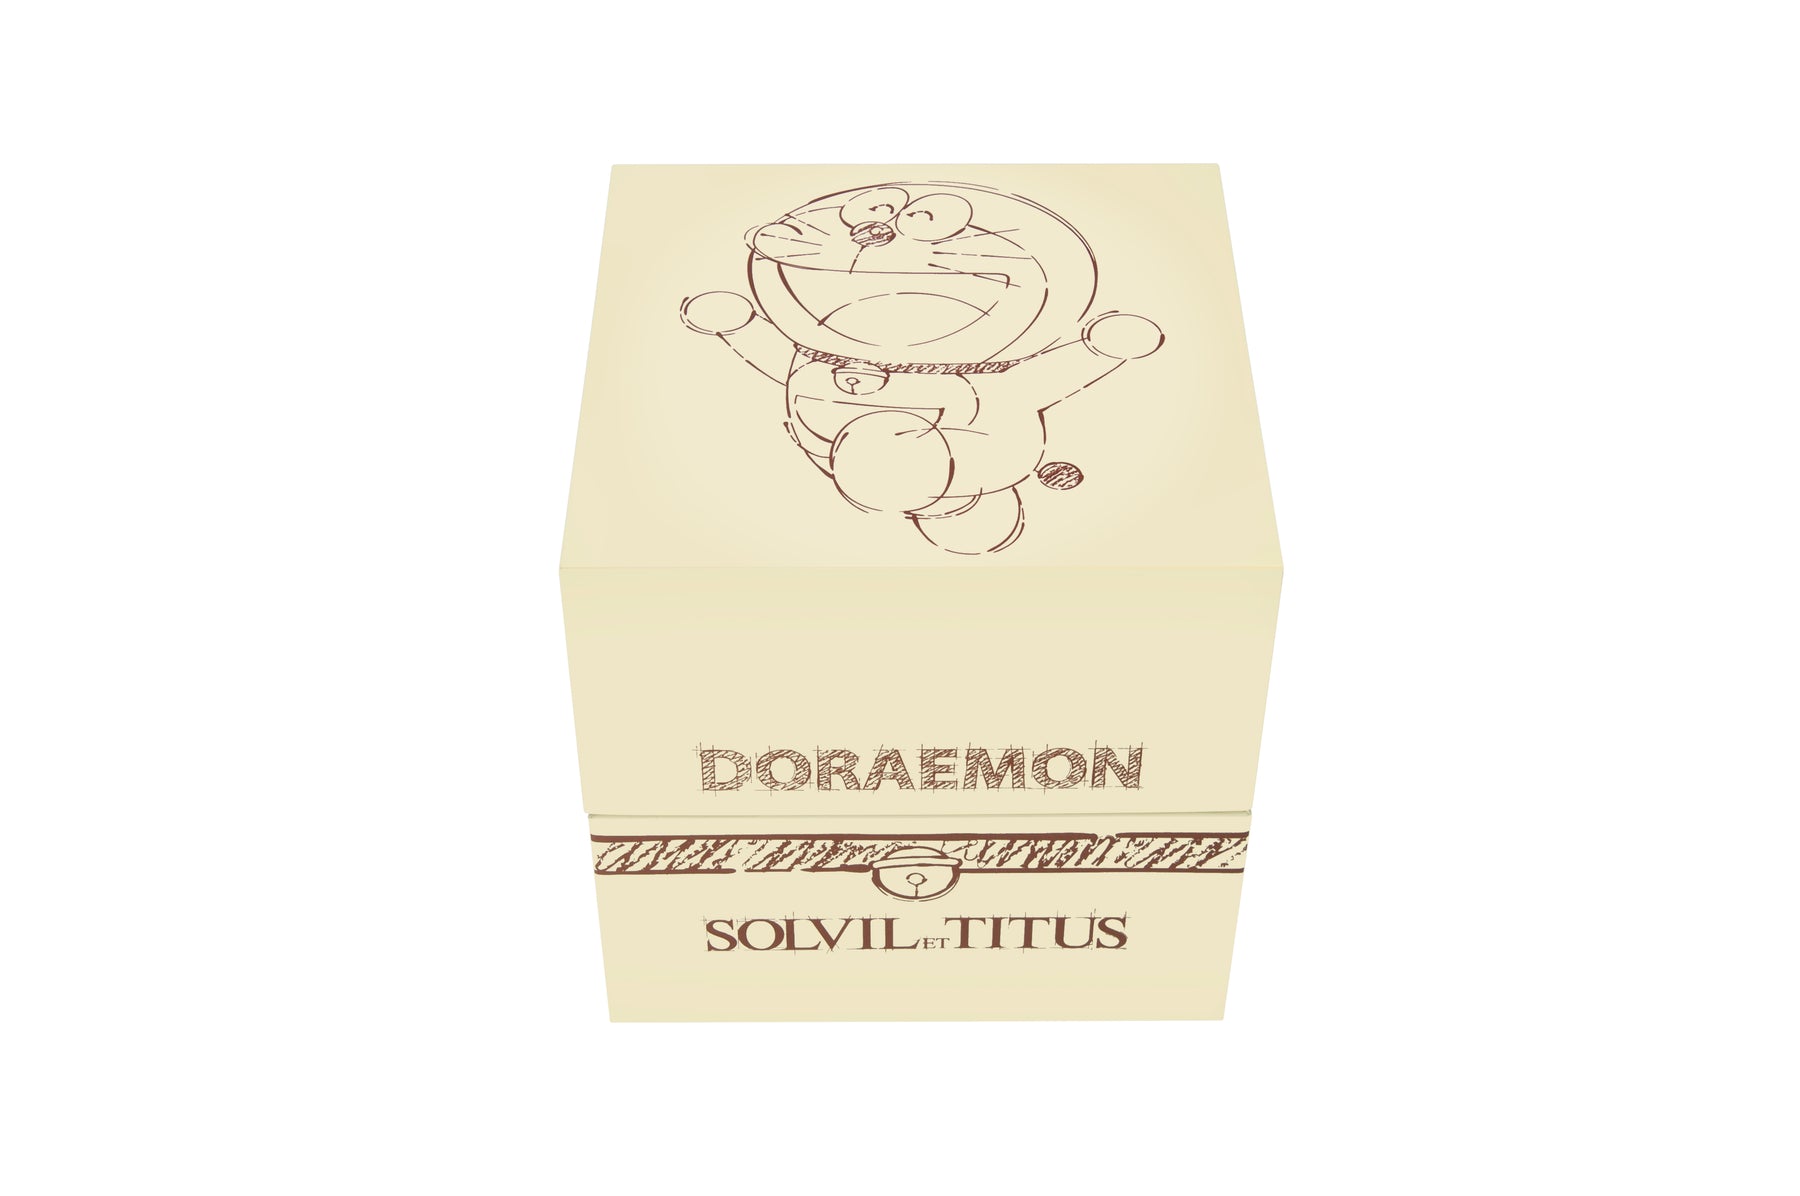 Solvil et Titus x Doraemon Limited Edition Doraemon 2 Hands Quartz Leather Women Watch W06-03312-002